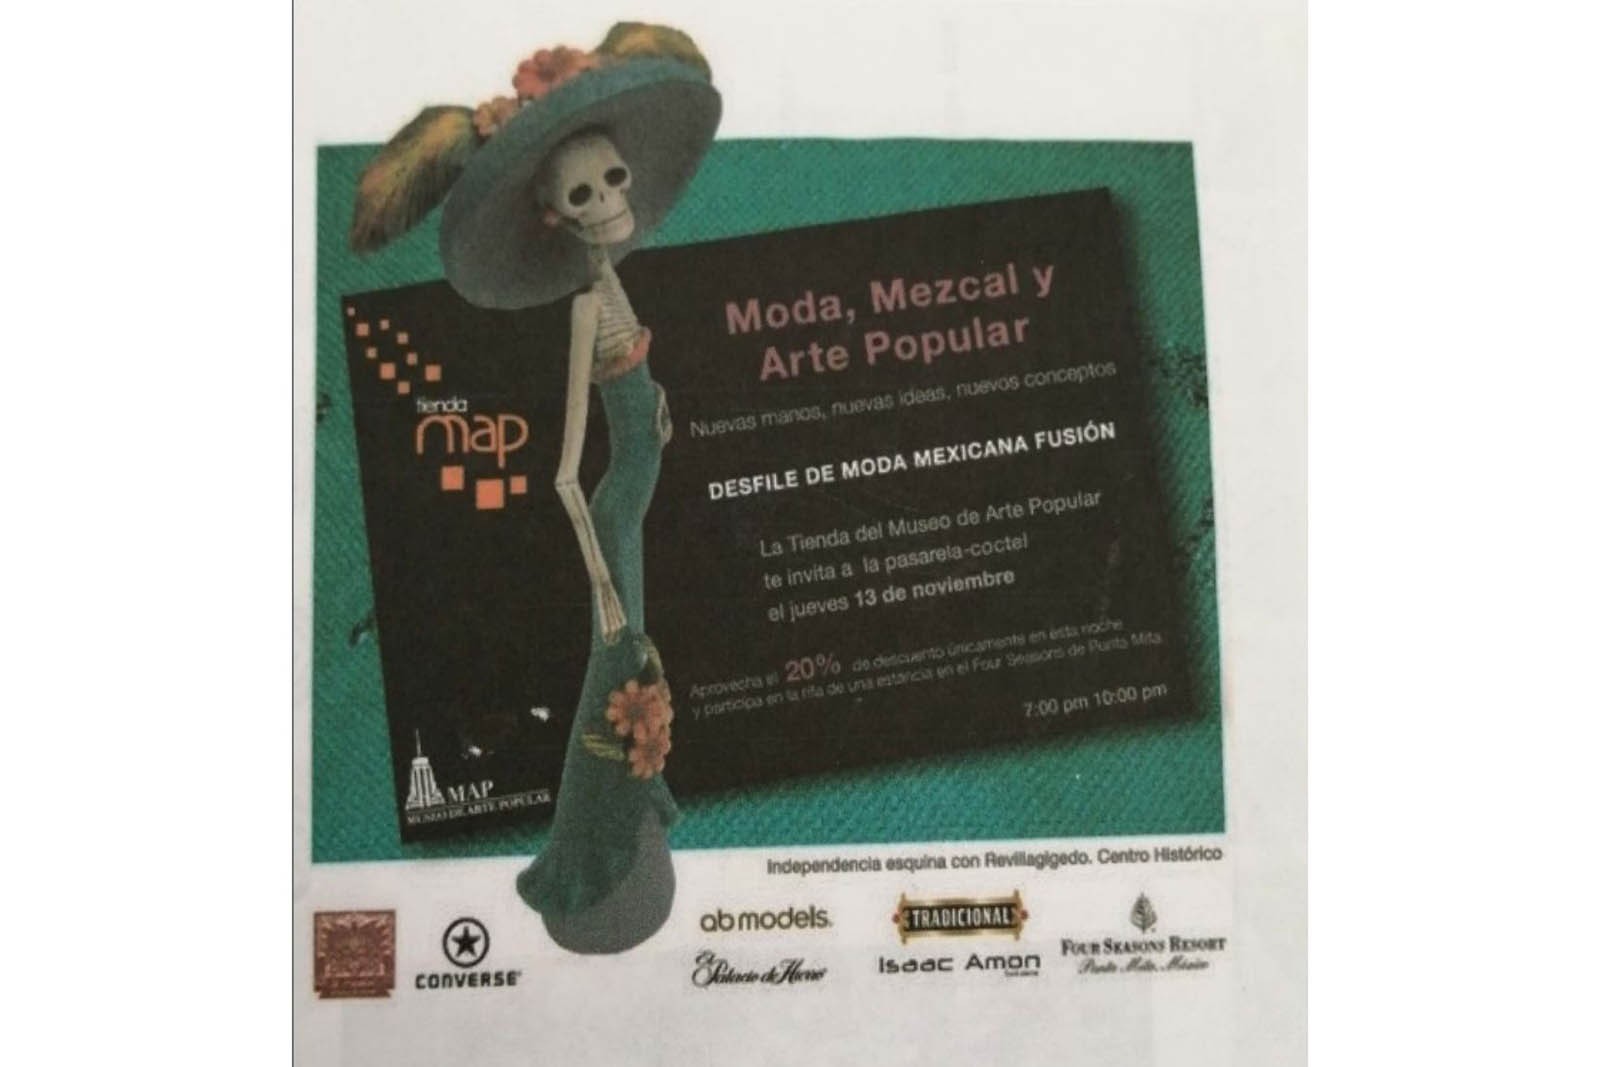 Invitación al desfile Moda, Mezcal y Arte Popular organizado por la Tienda del MAP. (Foto: AmigosMAP).